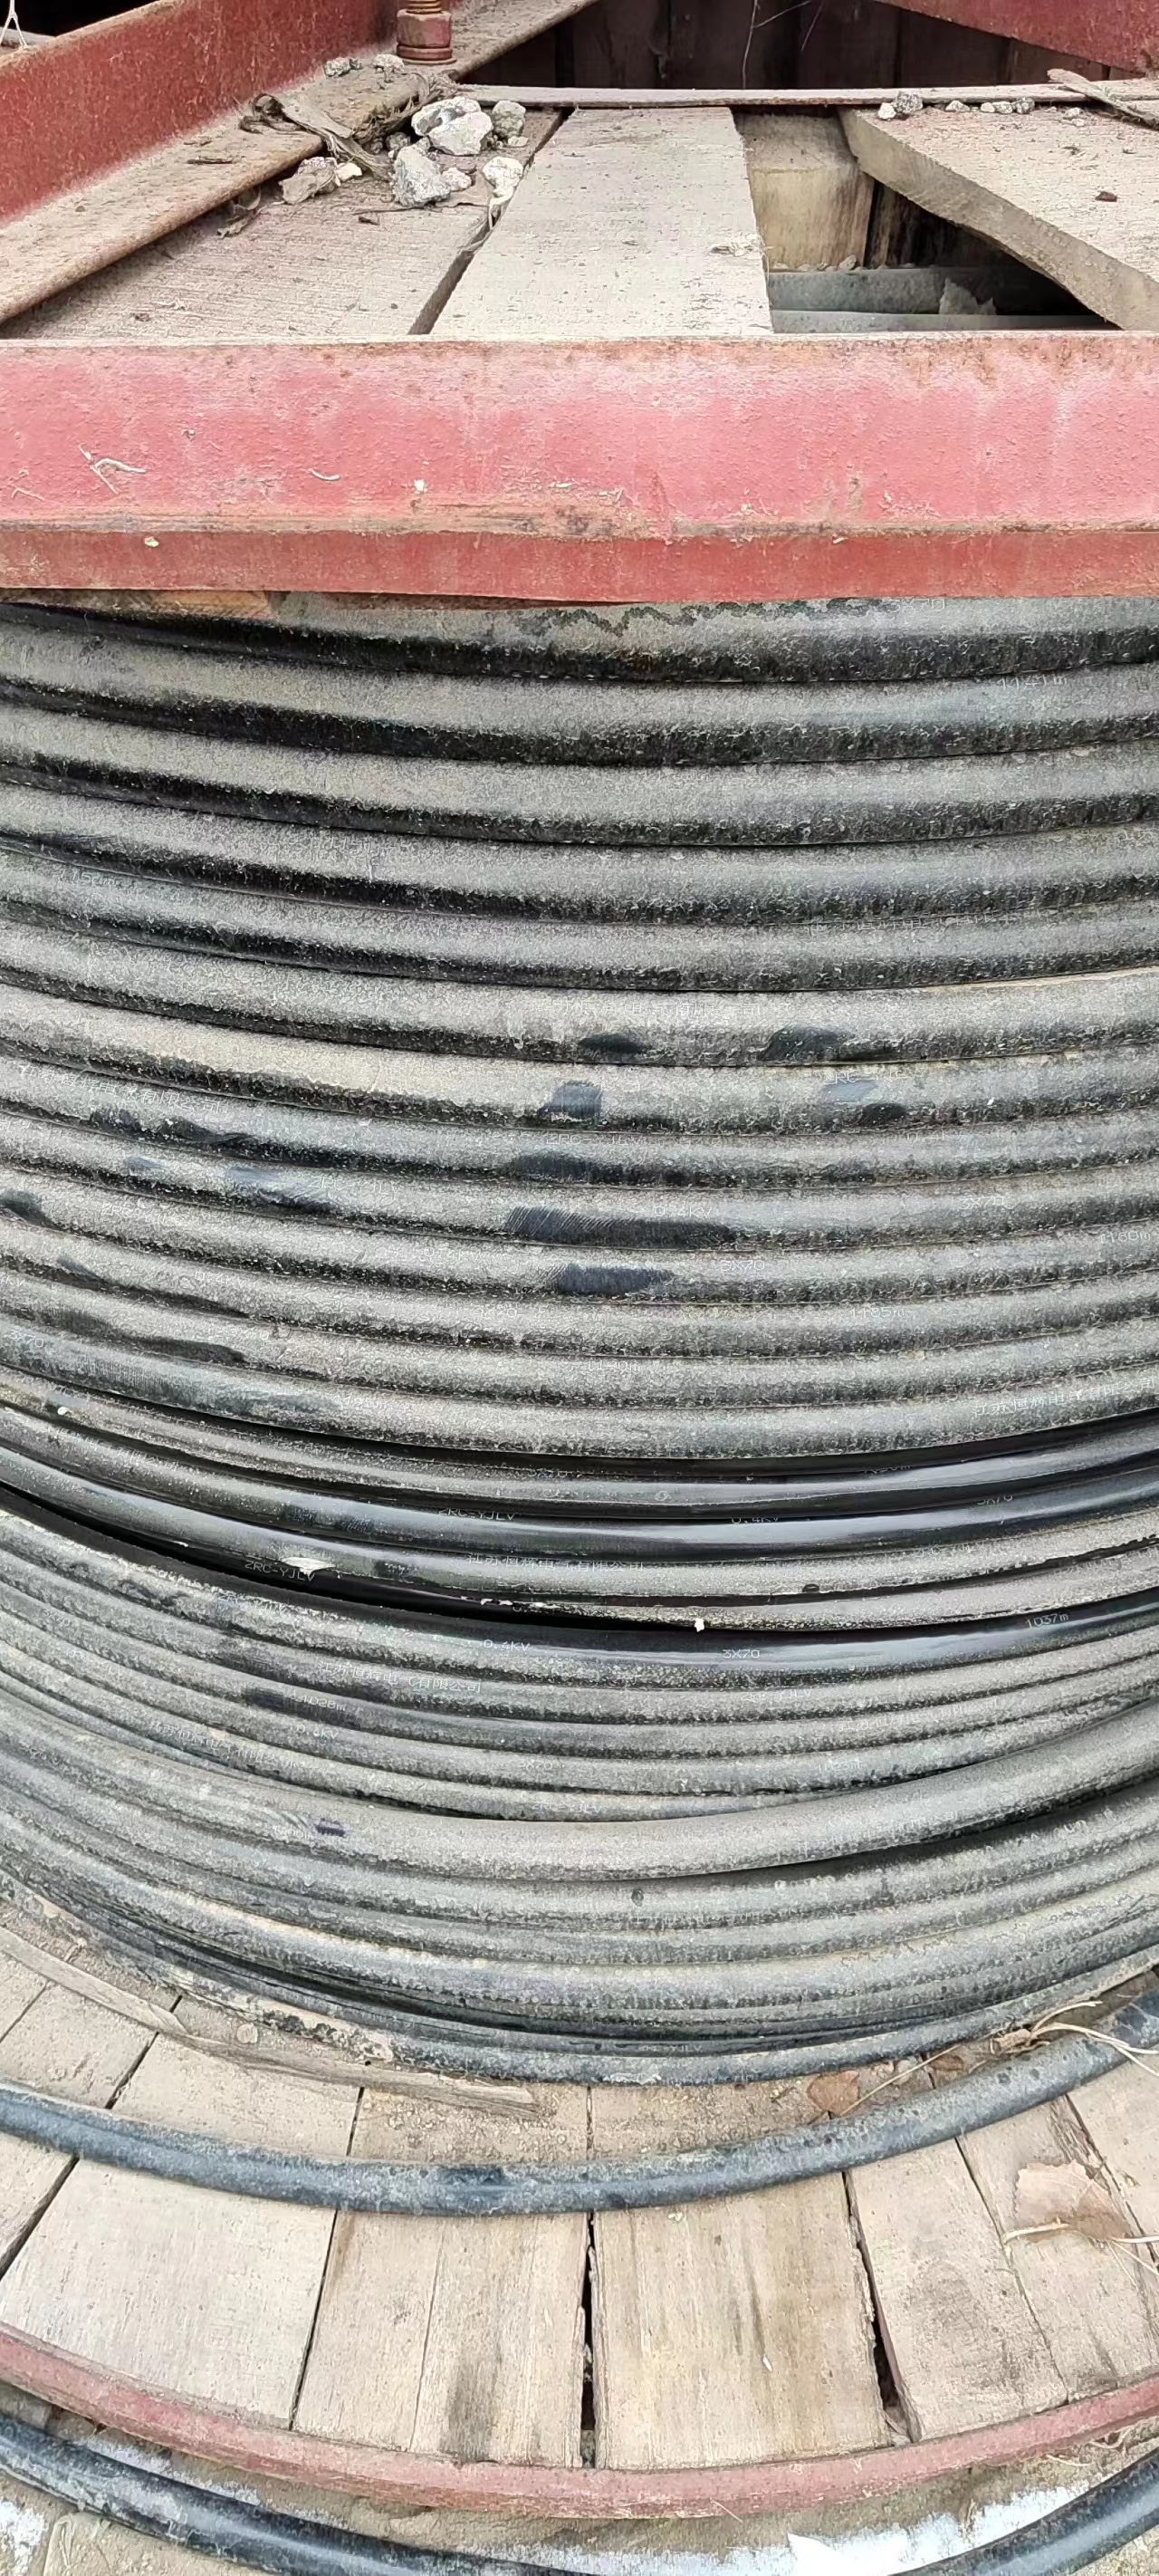 龙岩高低压电缆回收 工程剩余电缆回收